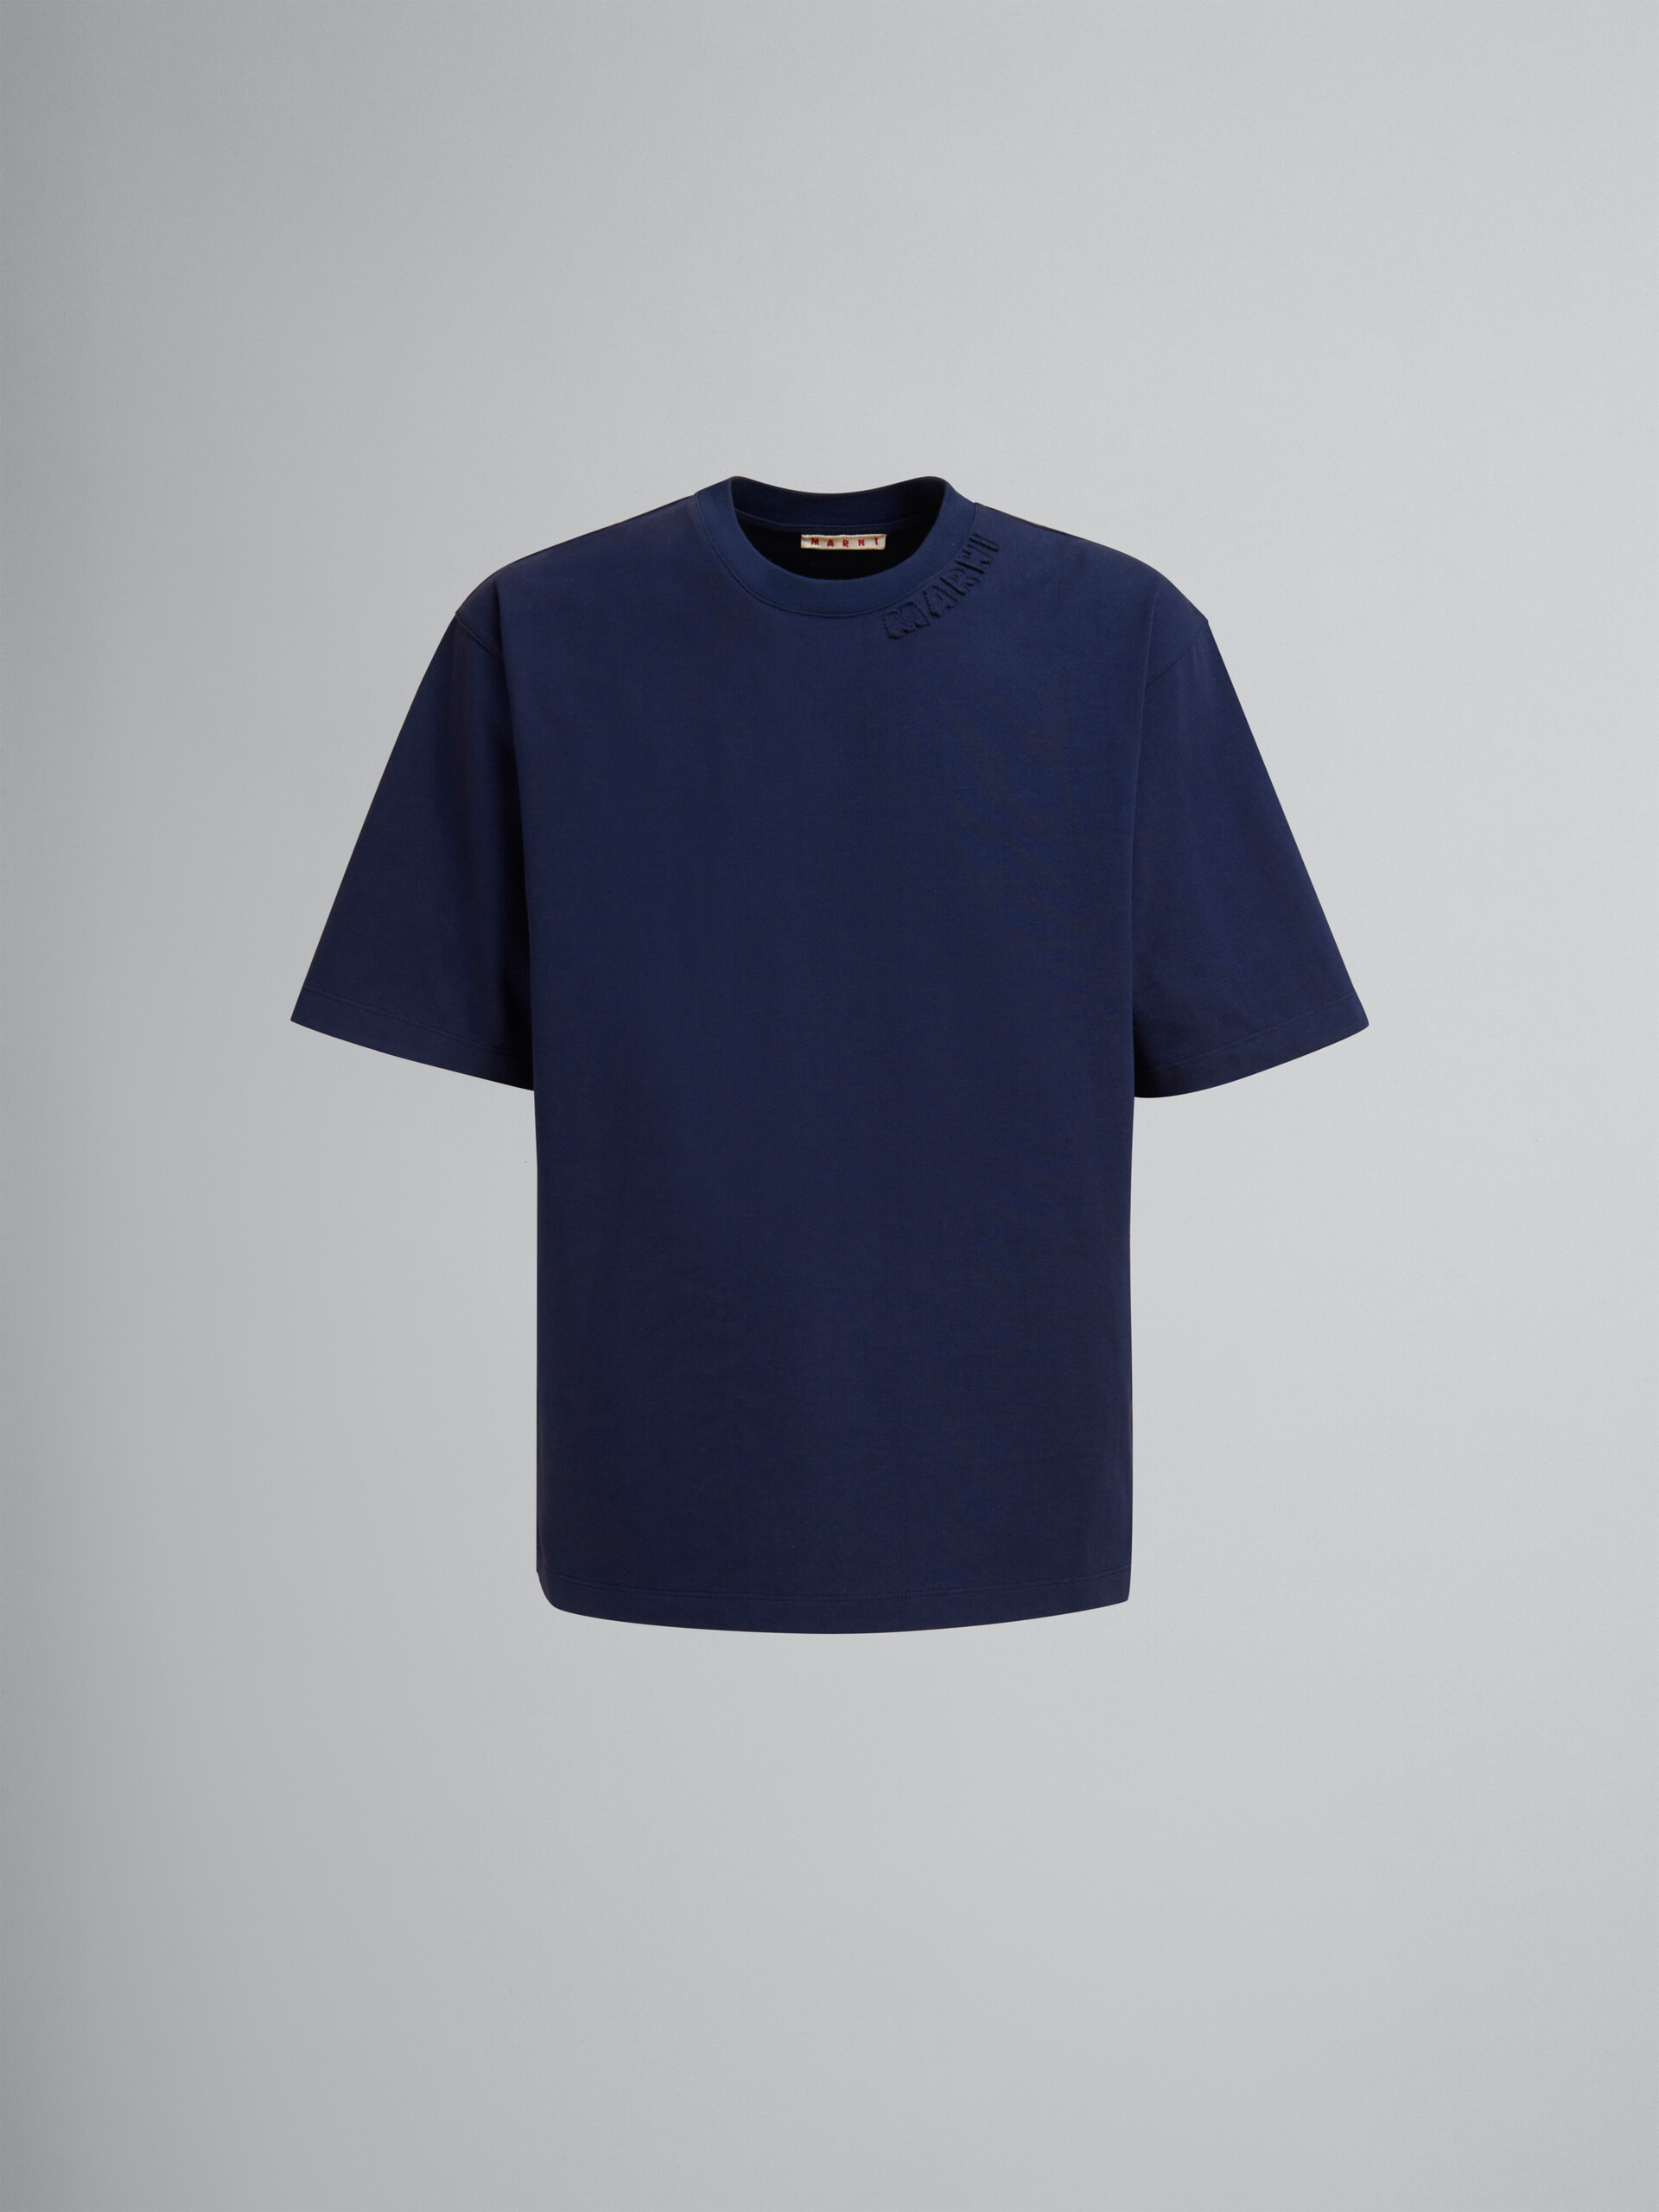 Hellblaues Oversize-T-Shirt aus Bio-Baumwolle mit Marni-Aufnähern - T-shirts - Image 1